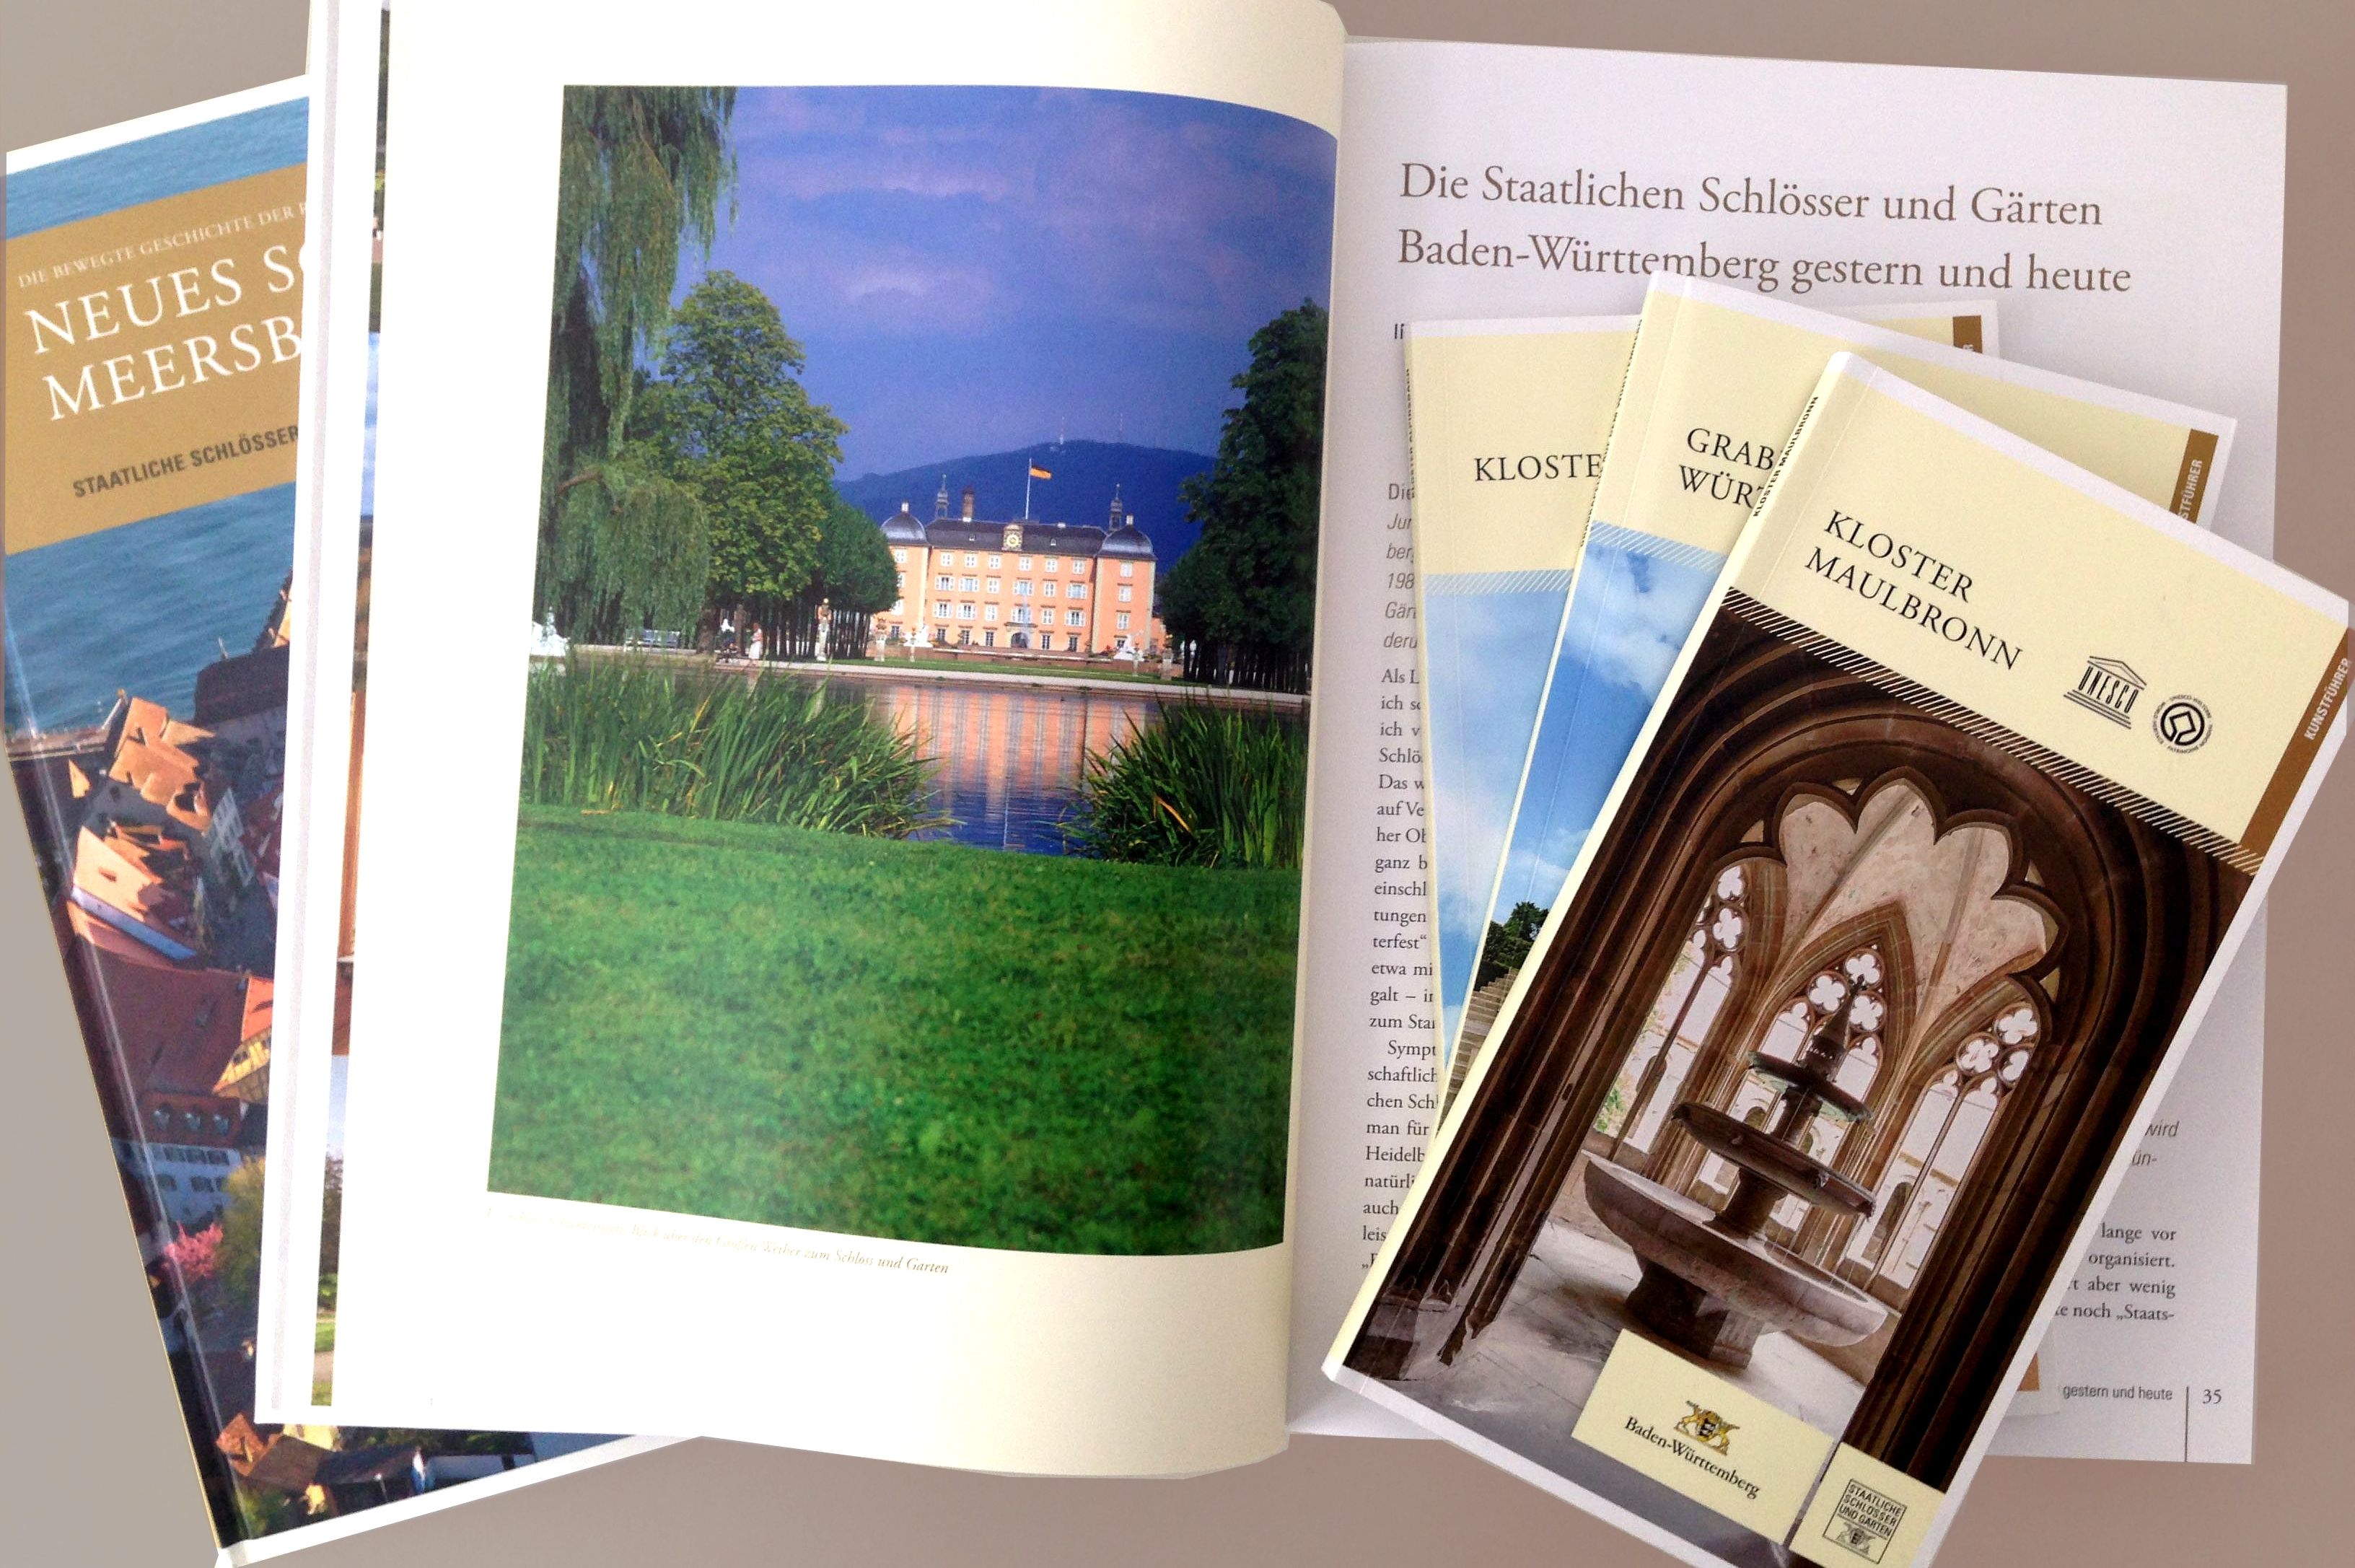 Buchauswahl der Staatlichen Schlösser und Gärten Baden-Württemberg